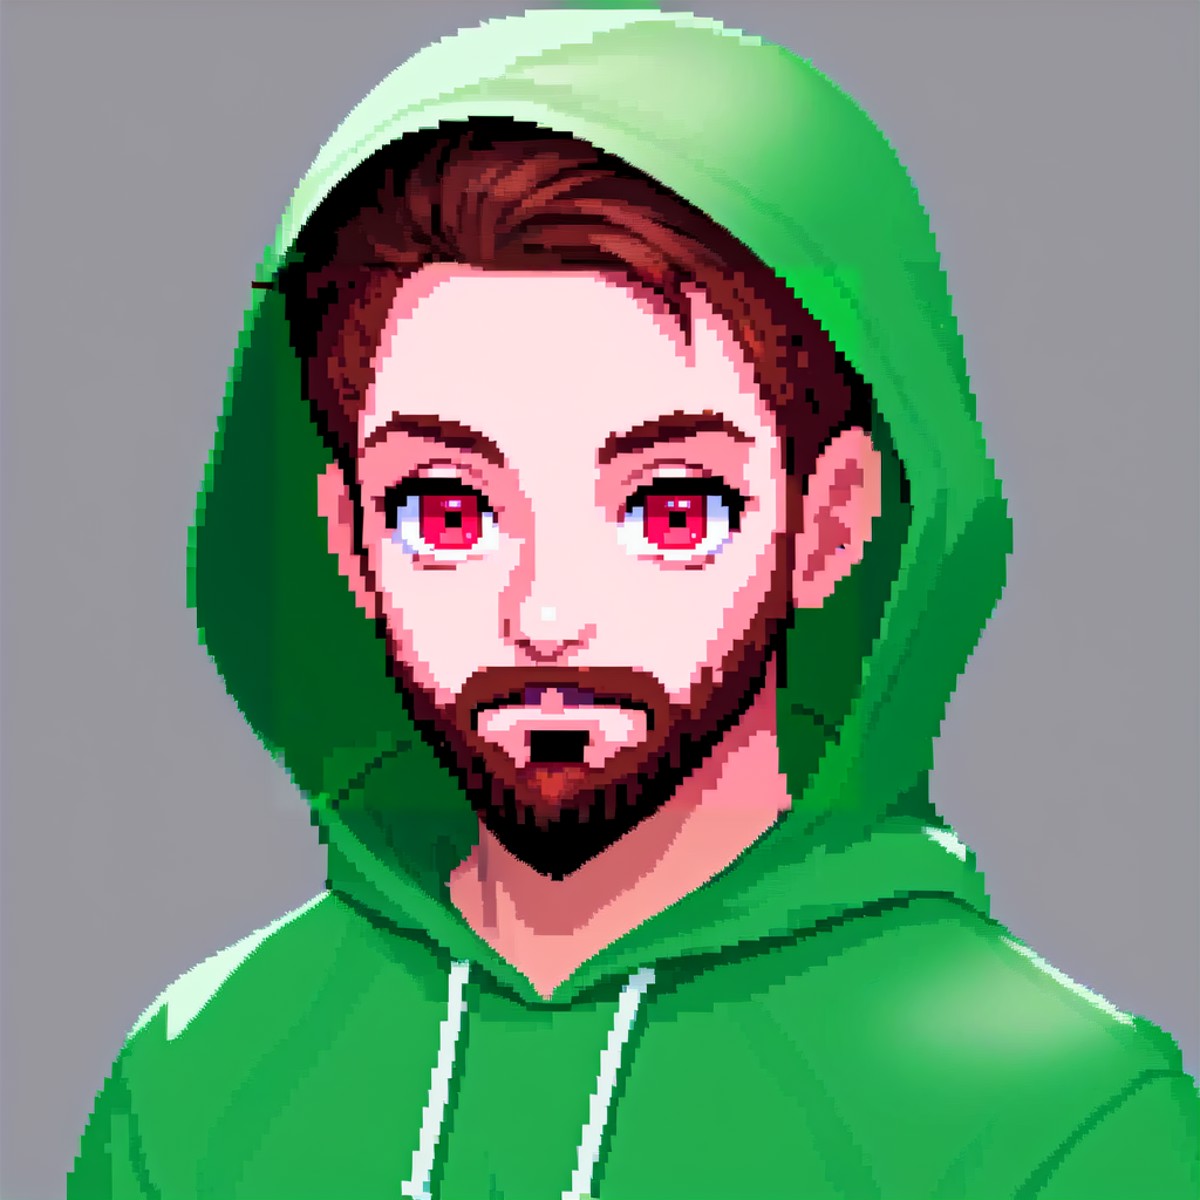 Male upper body, looking at viewer, beard, red eyes, green hoodie